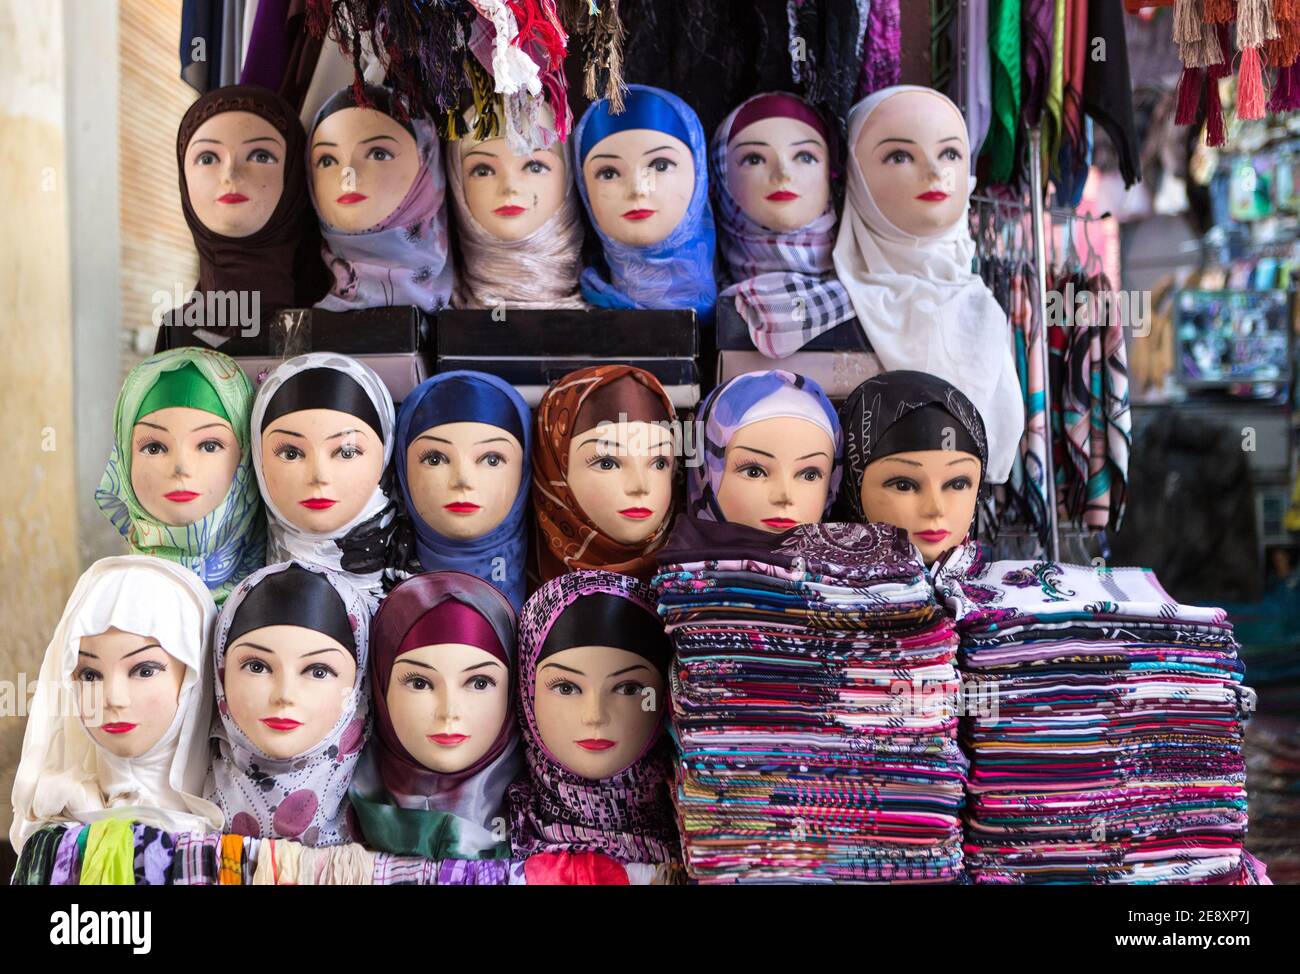 Manichino di donne arabe che indossano il hijab colorato del tessuto sulla testa nel mercato in Marocco. Concetto di viaggio, religione, islam, abbigliamento, moda, arte araba, Foto Stock